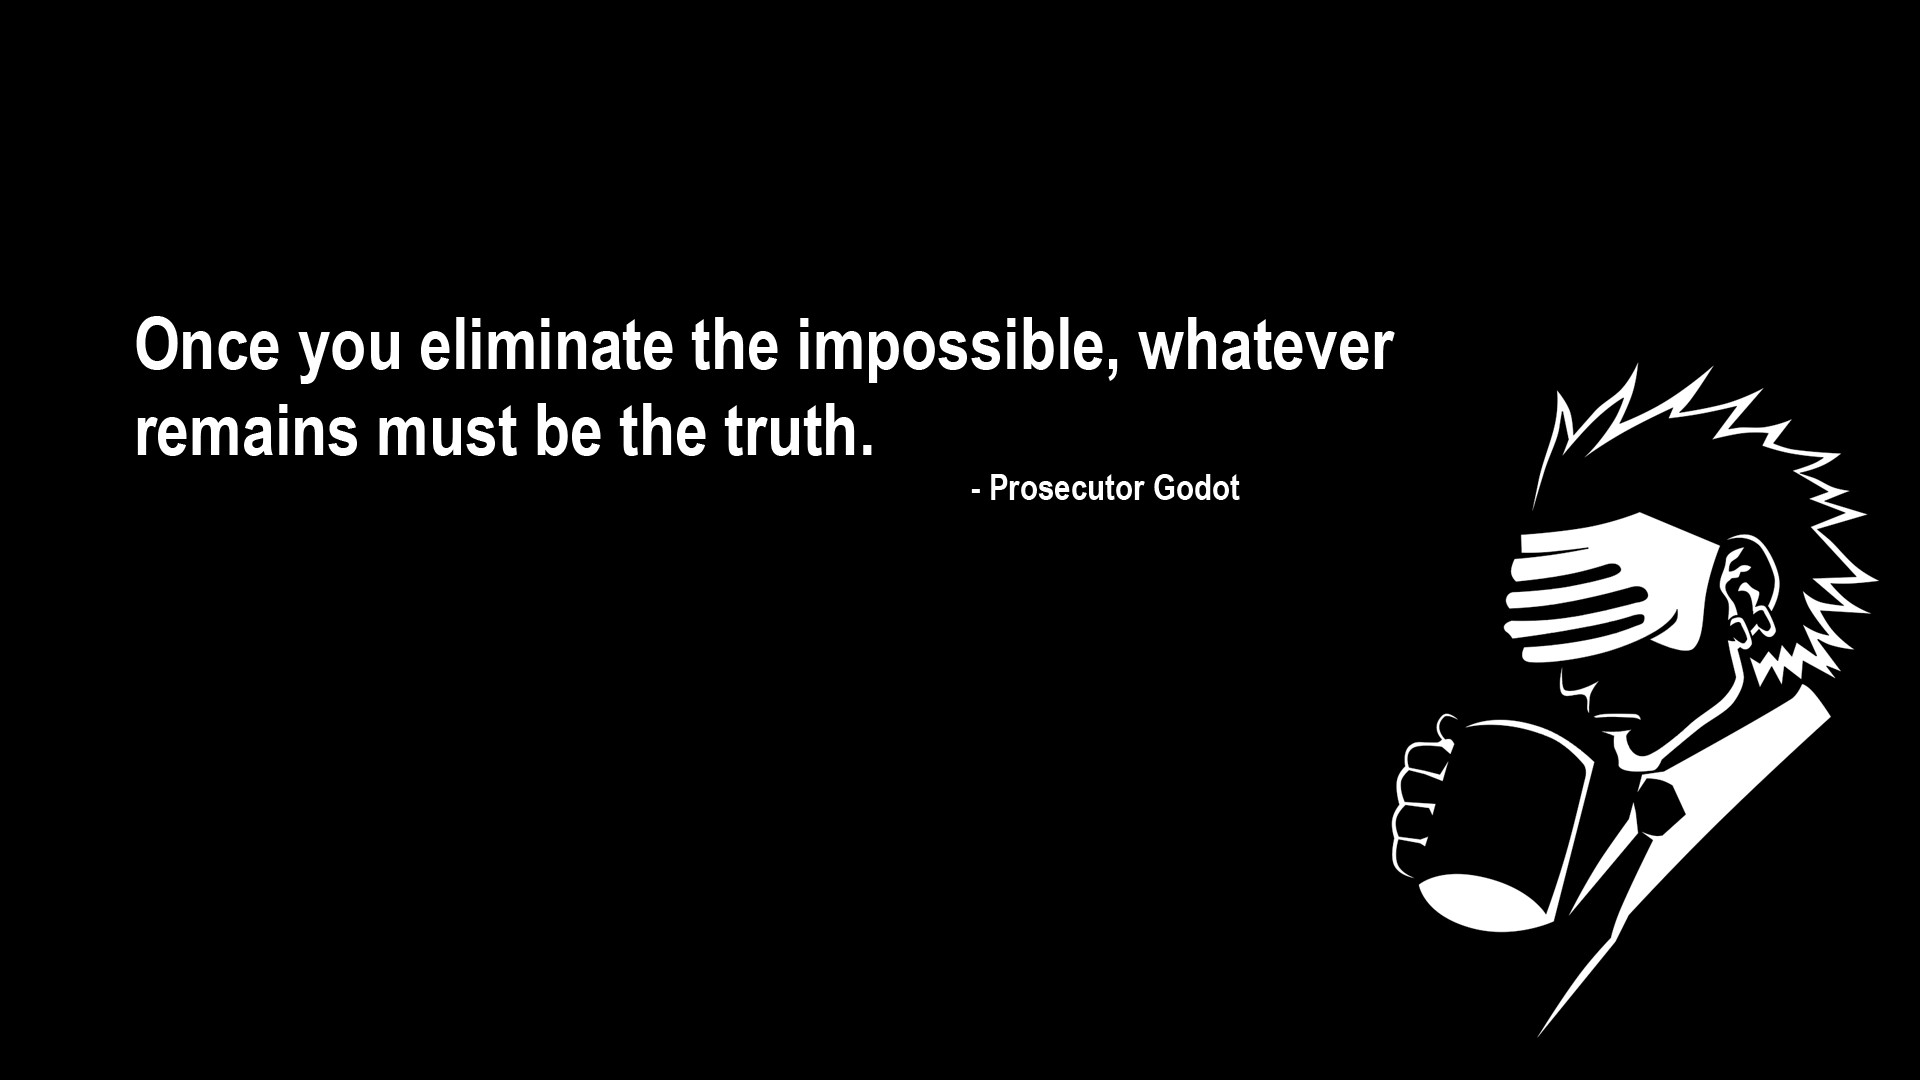 Godot quote